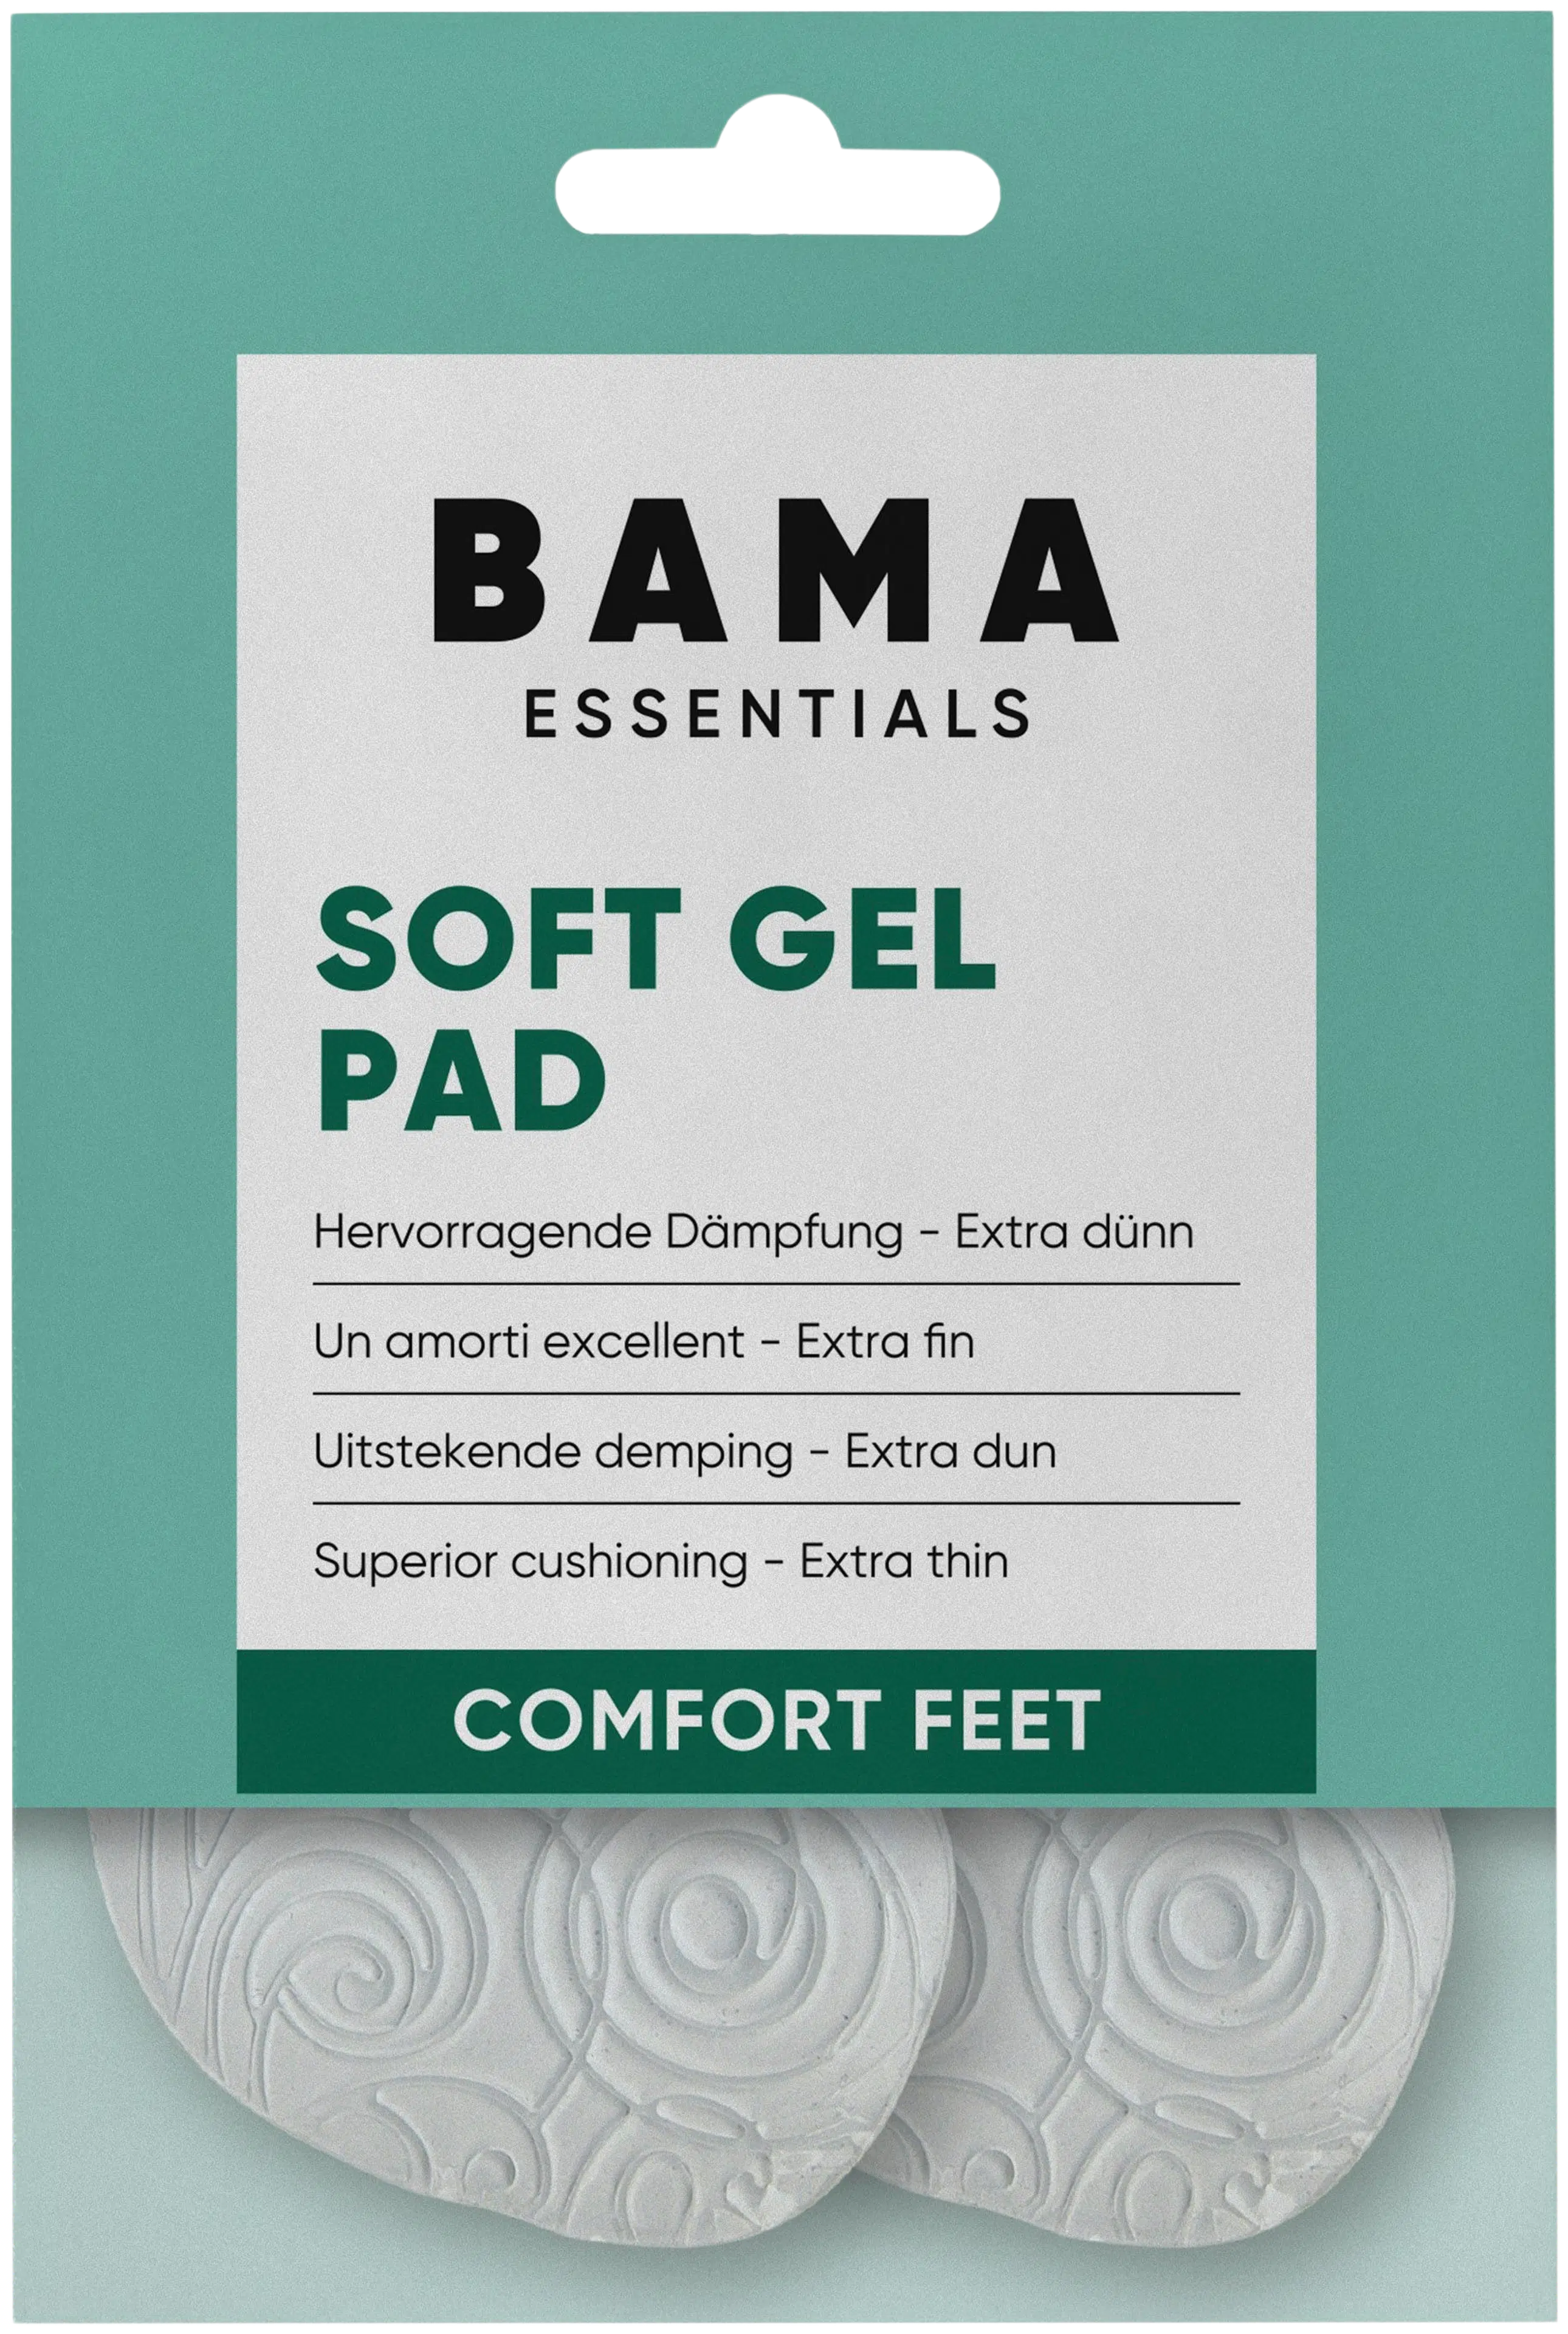 BAMA Soft Gel Pad